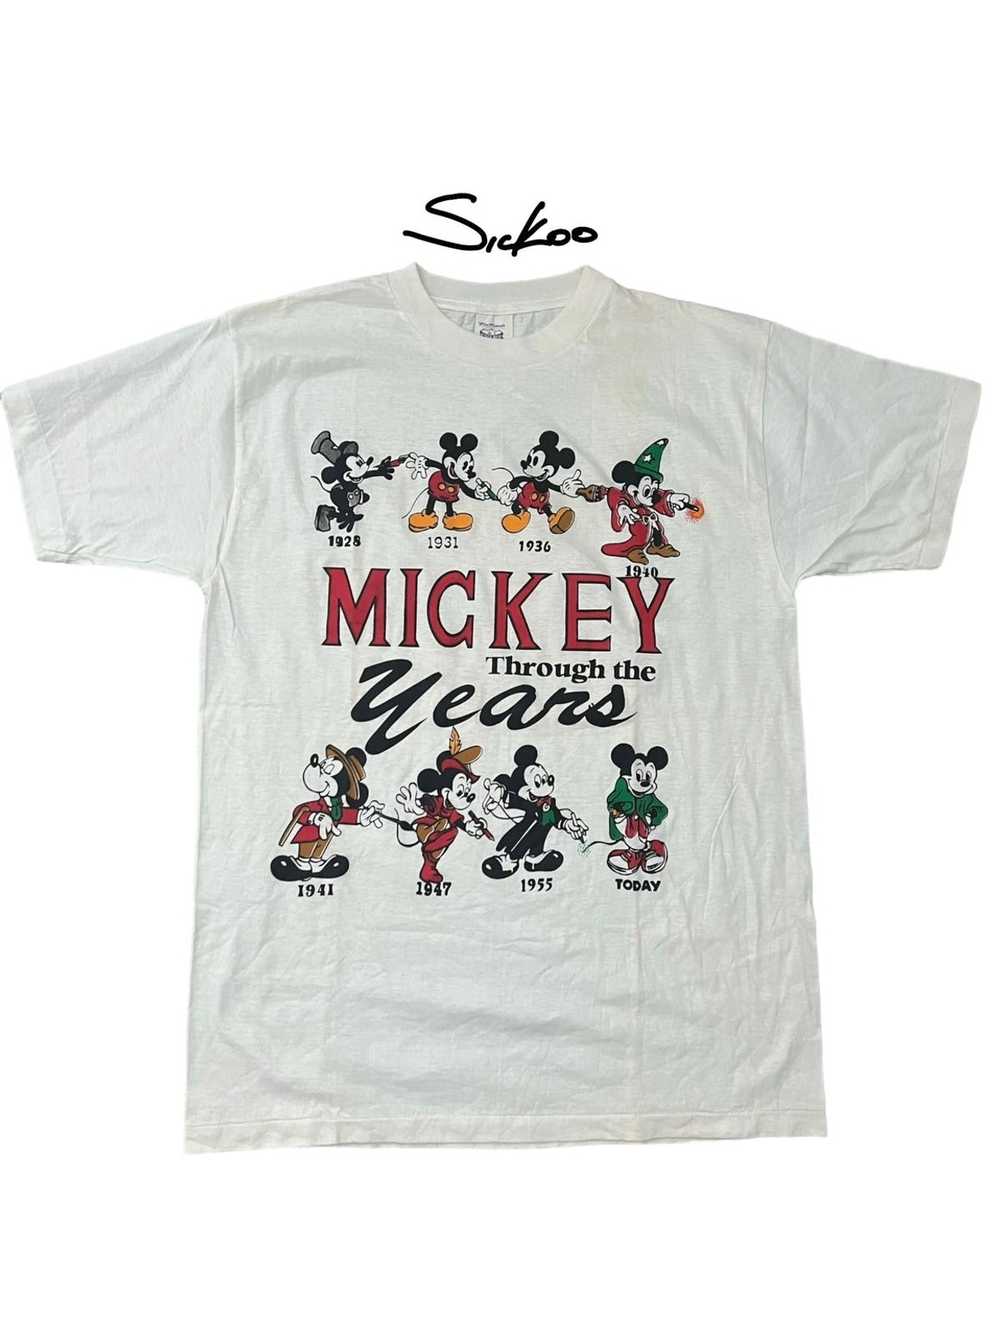 Disney × Vintage Vintage Mickey Mouse tee - image 1